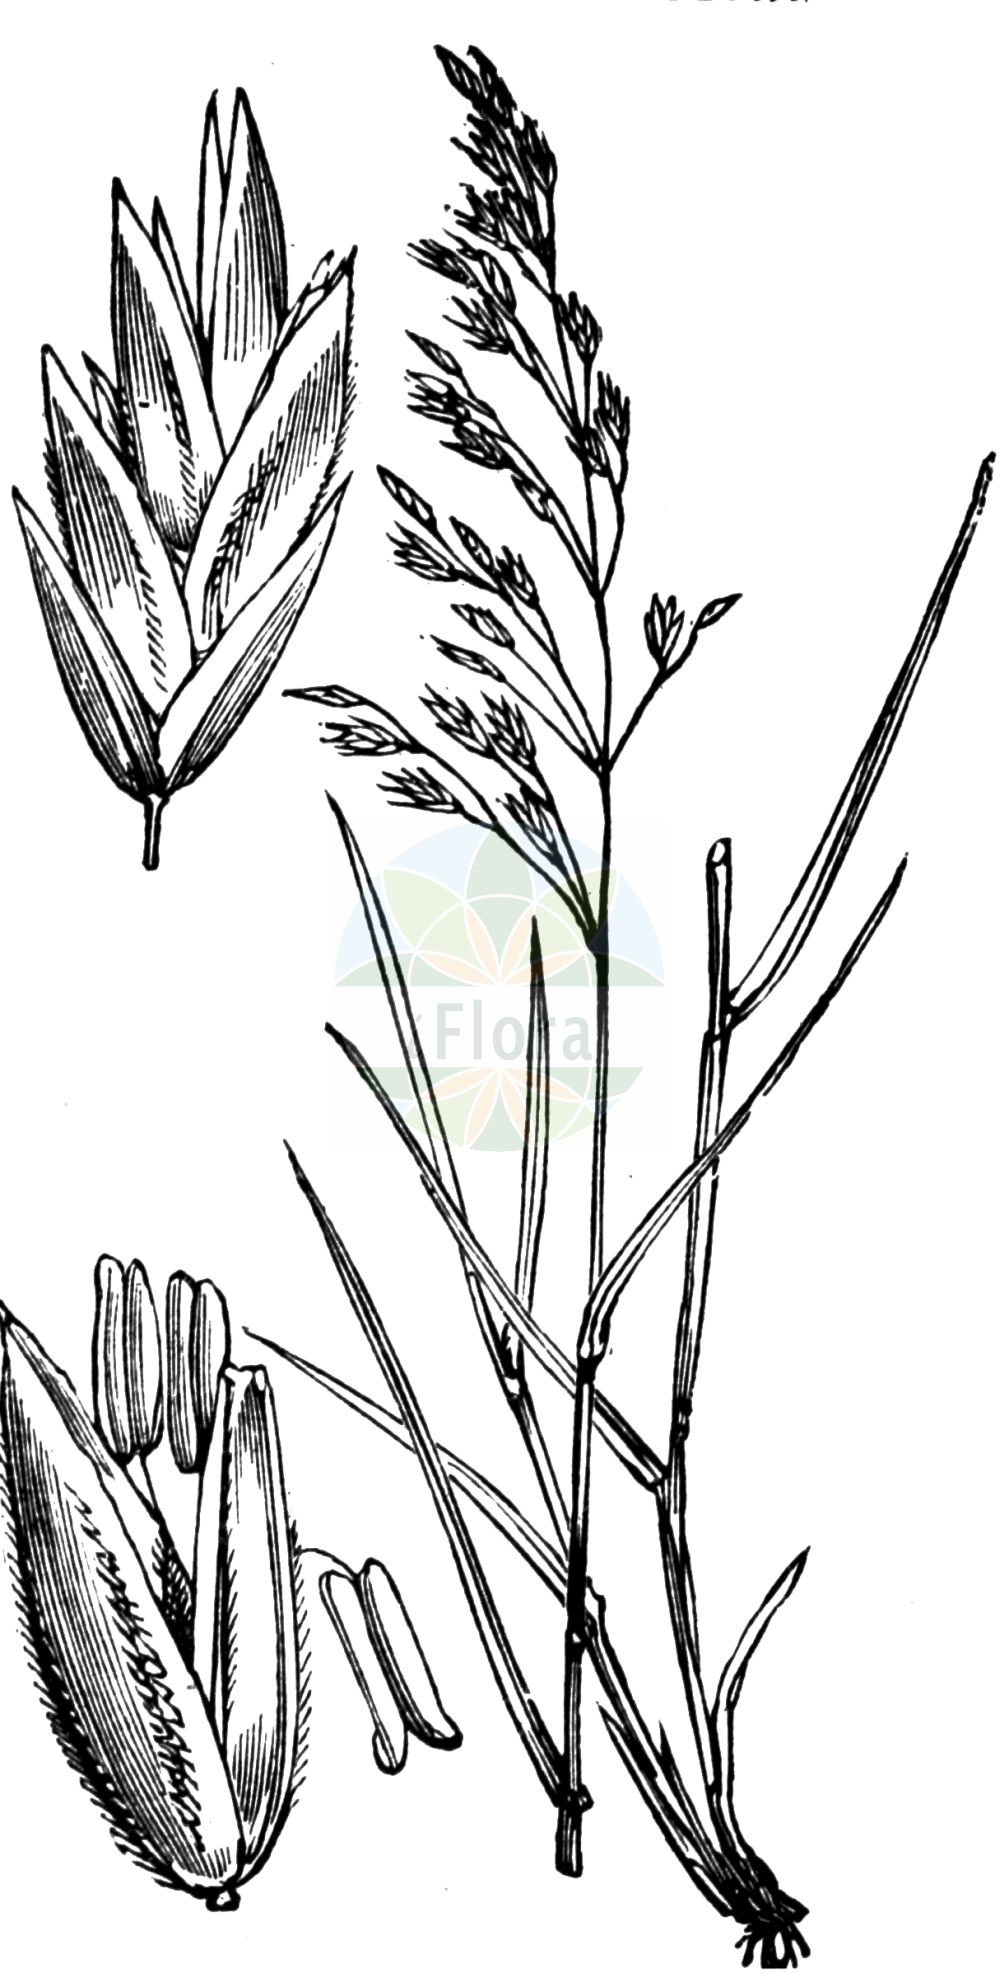 Historische Abbildung von Poa nemoralis (Hain-Rispengras - Wood Meadow-grass). Das Bild zeigt Blatt, Bluete, Frucht und Same. ---- Historical Drawing of Poa nemoralis (Hain-Rispengras - Wood Meadow-grass). The image is showing leaf, flower, fruit and seed.(Poa nemoralis,Hain-Rispengras,Wood Meadow-grass,Poa nemoralis,Poa nemoralis var. rigidula,Hain-Rispengras,Wood Meadow-grass,Wood Bluegrass,Wood Poa,Poa,Rispengras,Bluegrass,Poaceae,Süßgräser,Grass family,Blatt,Bluete,Frucht,Same,leaf,flower,fruit,seed,Fitch et al. (1880))